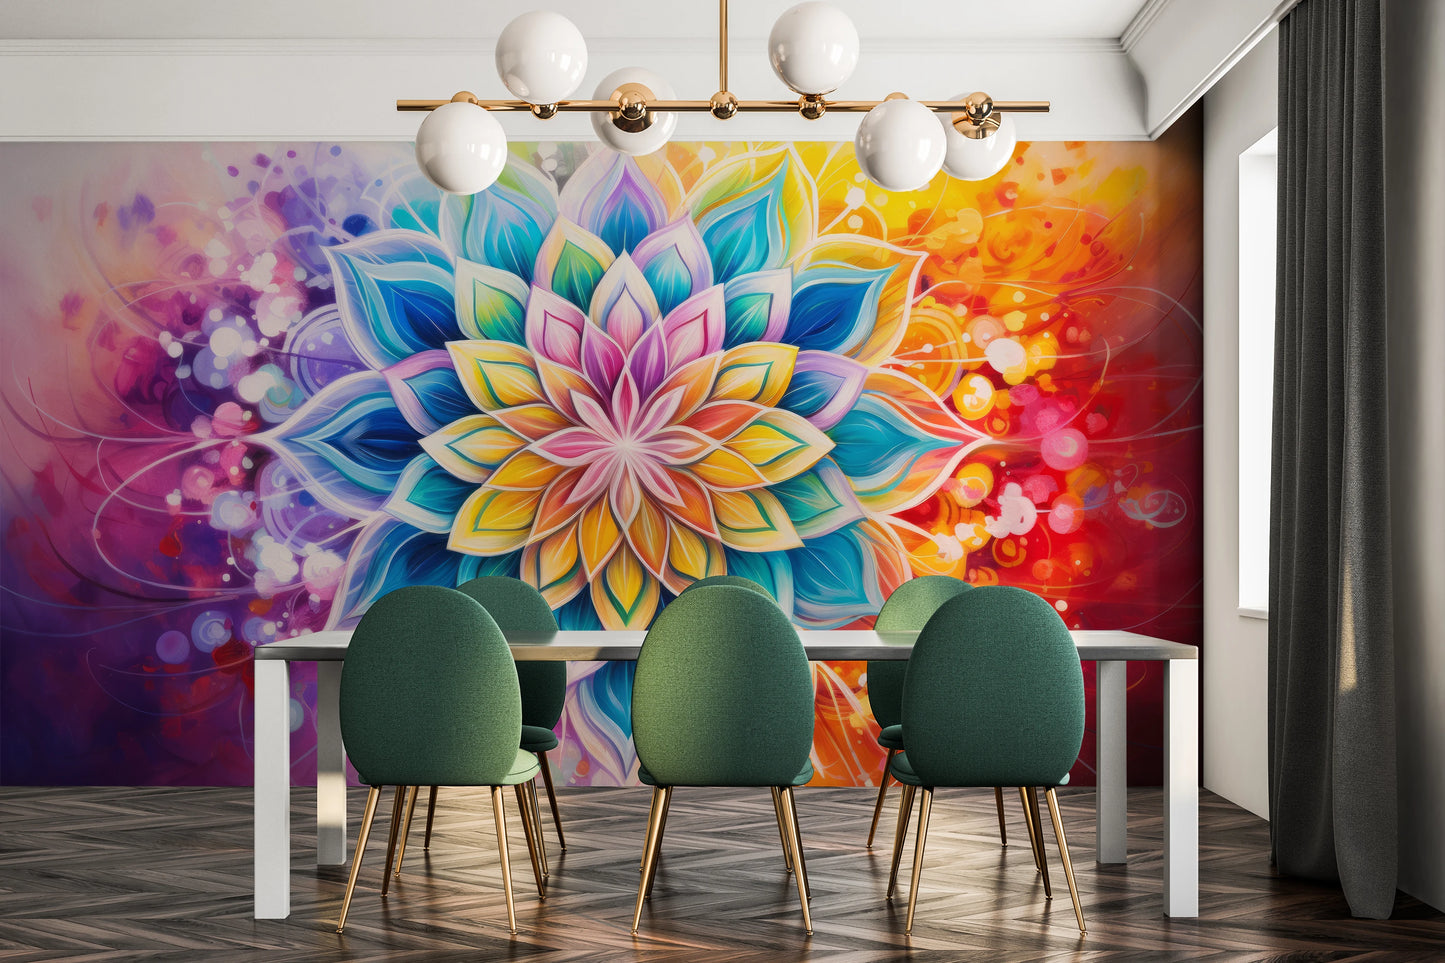 Fototapeta malowana o nazwie Floral Harmony pokazana w aranżacji wnętrza.